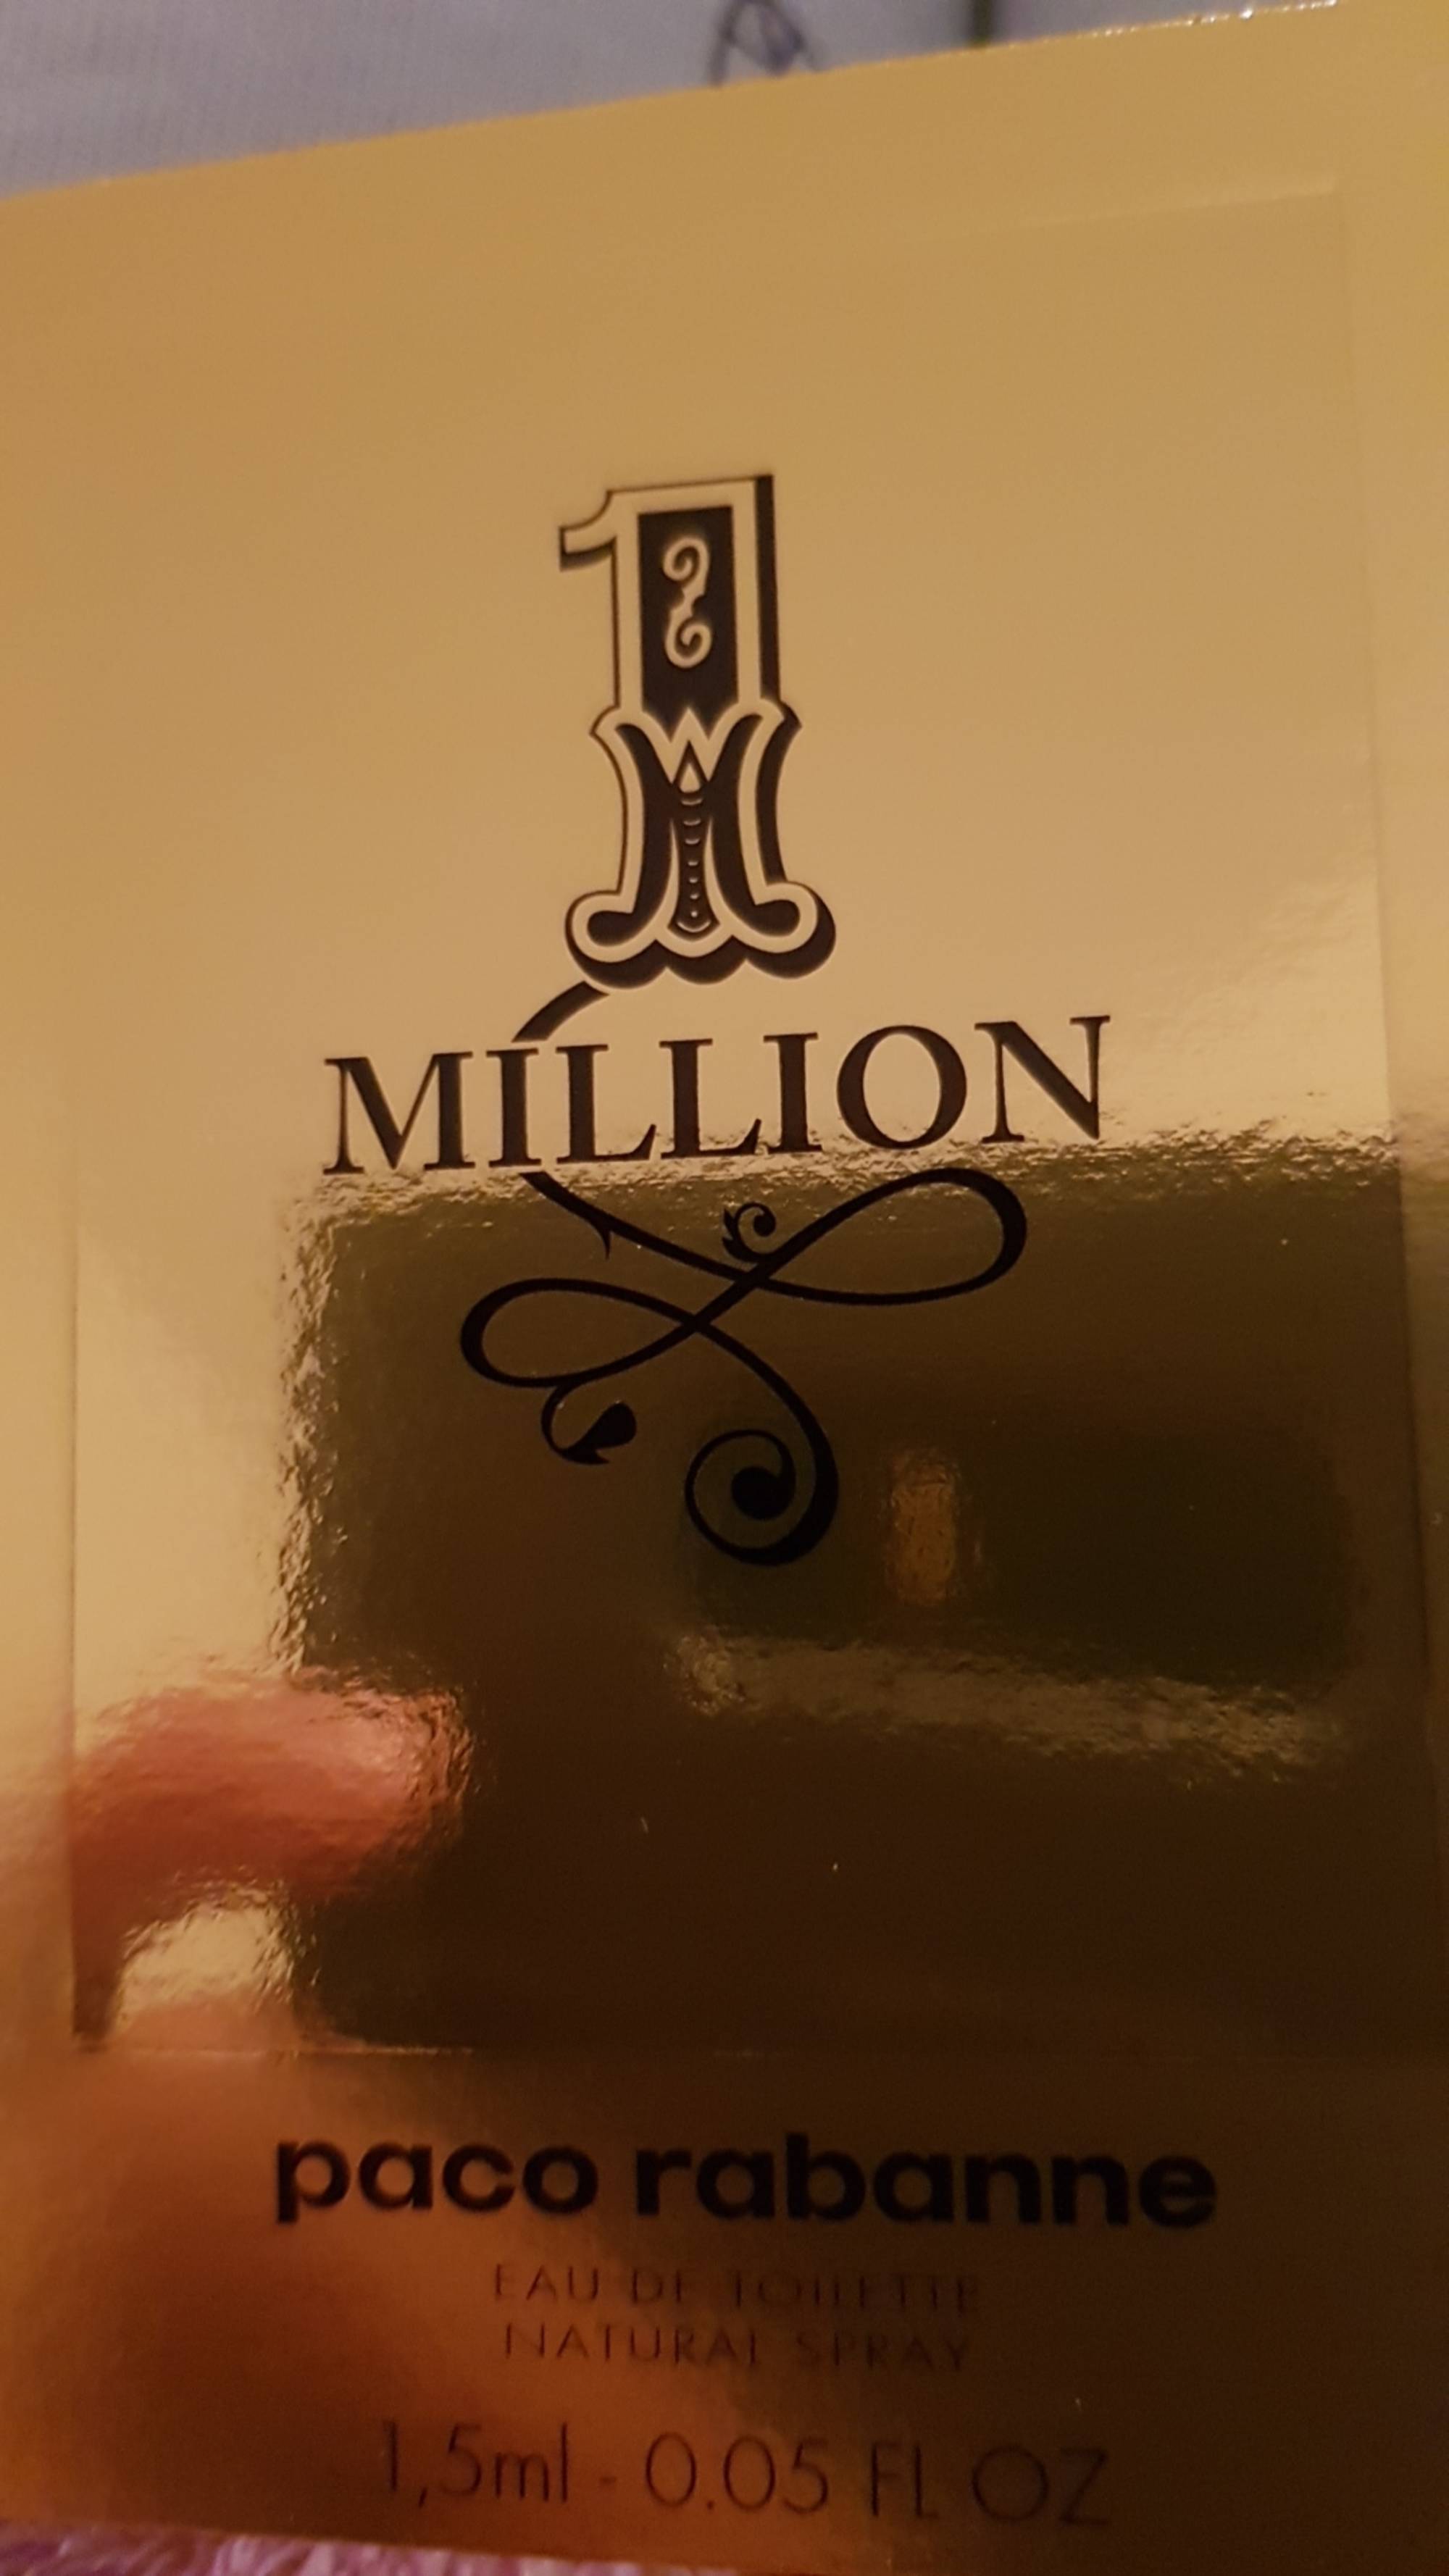 PACO RABANNE - 1 Million - Eau de toilette